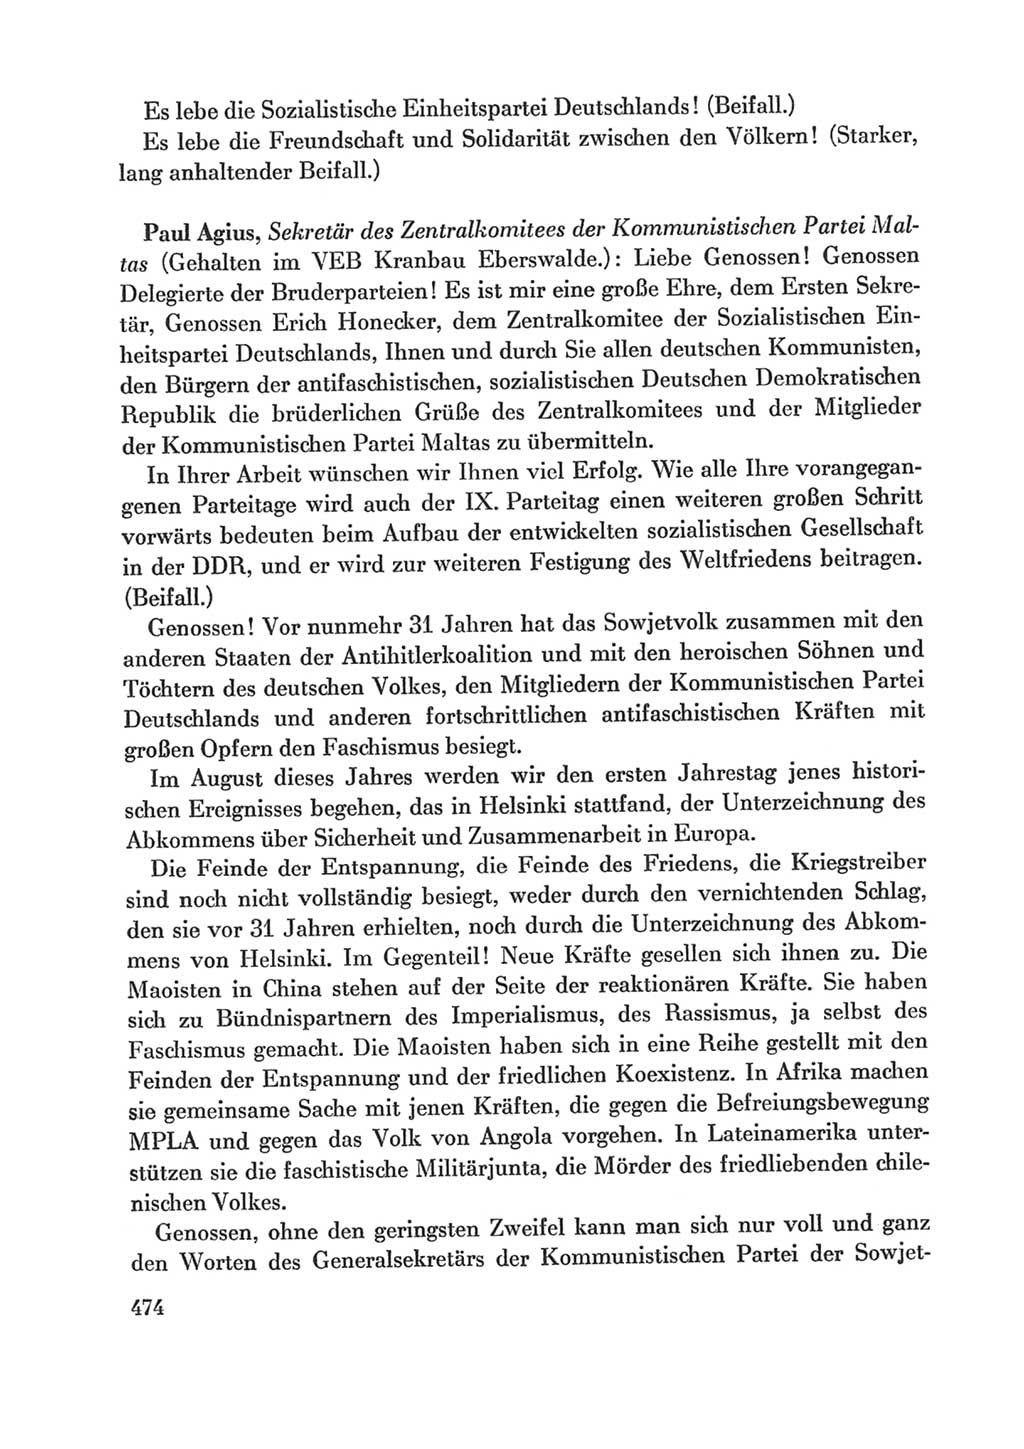 Protokoll der Verhandlungen des Ⅸ. Parteitages der Sozialistischen Einheitspartei Deutschlands (SED) [Deutsche Demokratische Republik (DDR)] 1976, Band 1, Seite 474 (Prot. Verh. Ⅸ. PT SED DDR 1976, Bd. 1, S. 474)